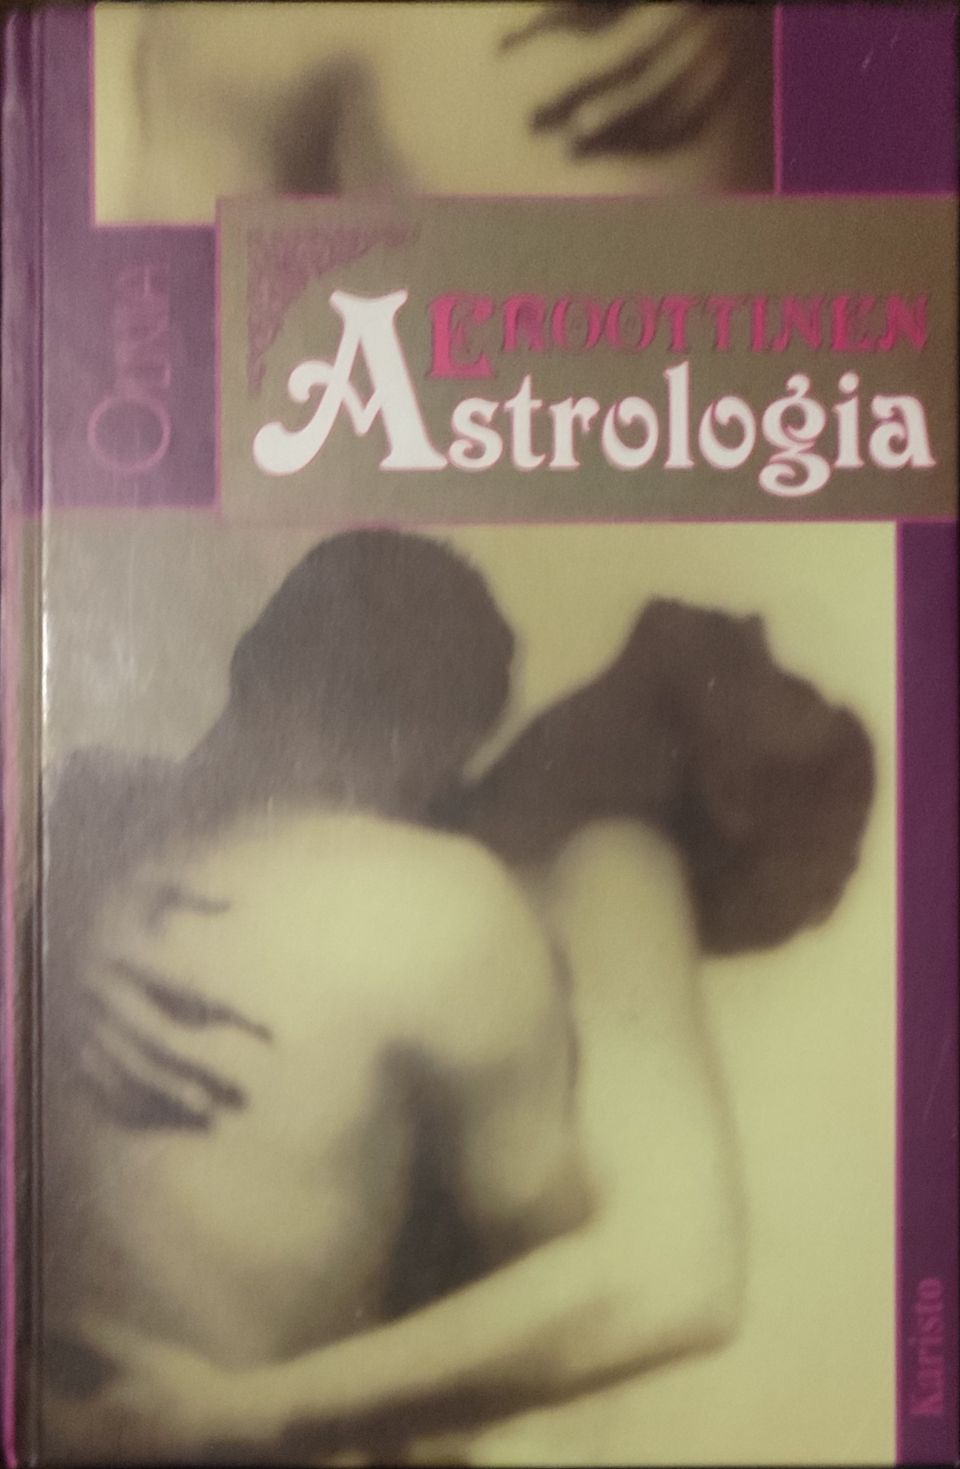 Eroottinen astrologia -kirja